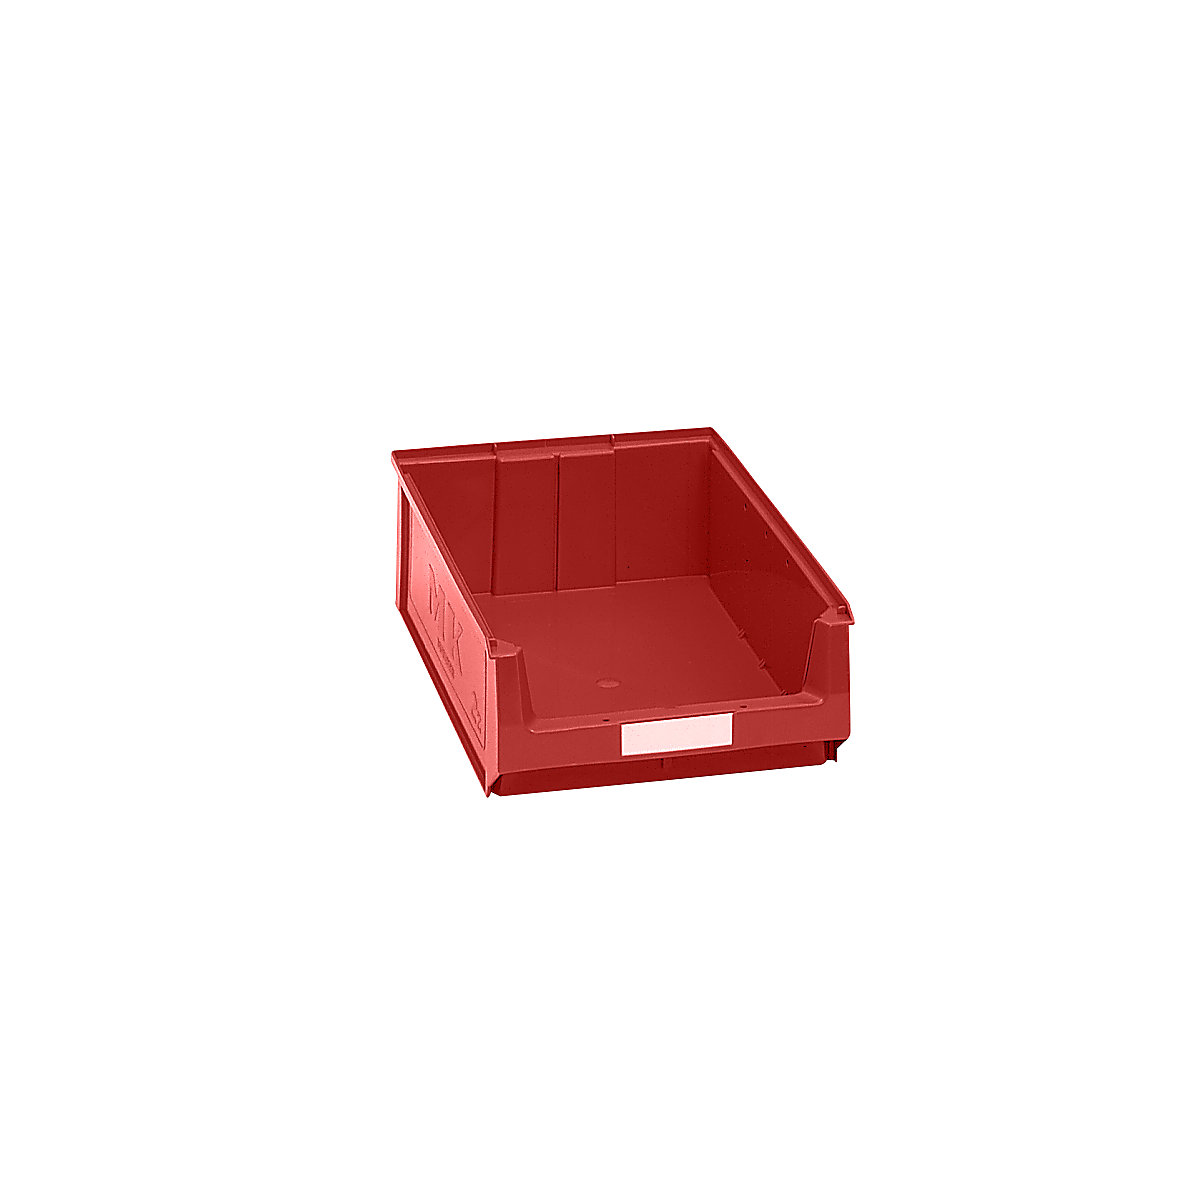 Prepravka s viditeľným obsahom z polyetylénu – mauser, d x š x v 500 x 310 x 140 mm, červená, OJ 14 ks-8